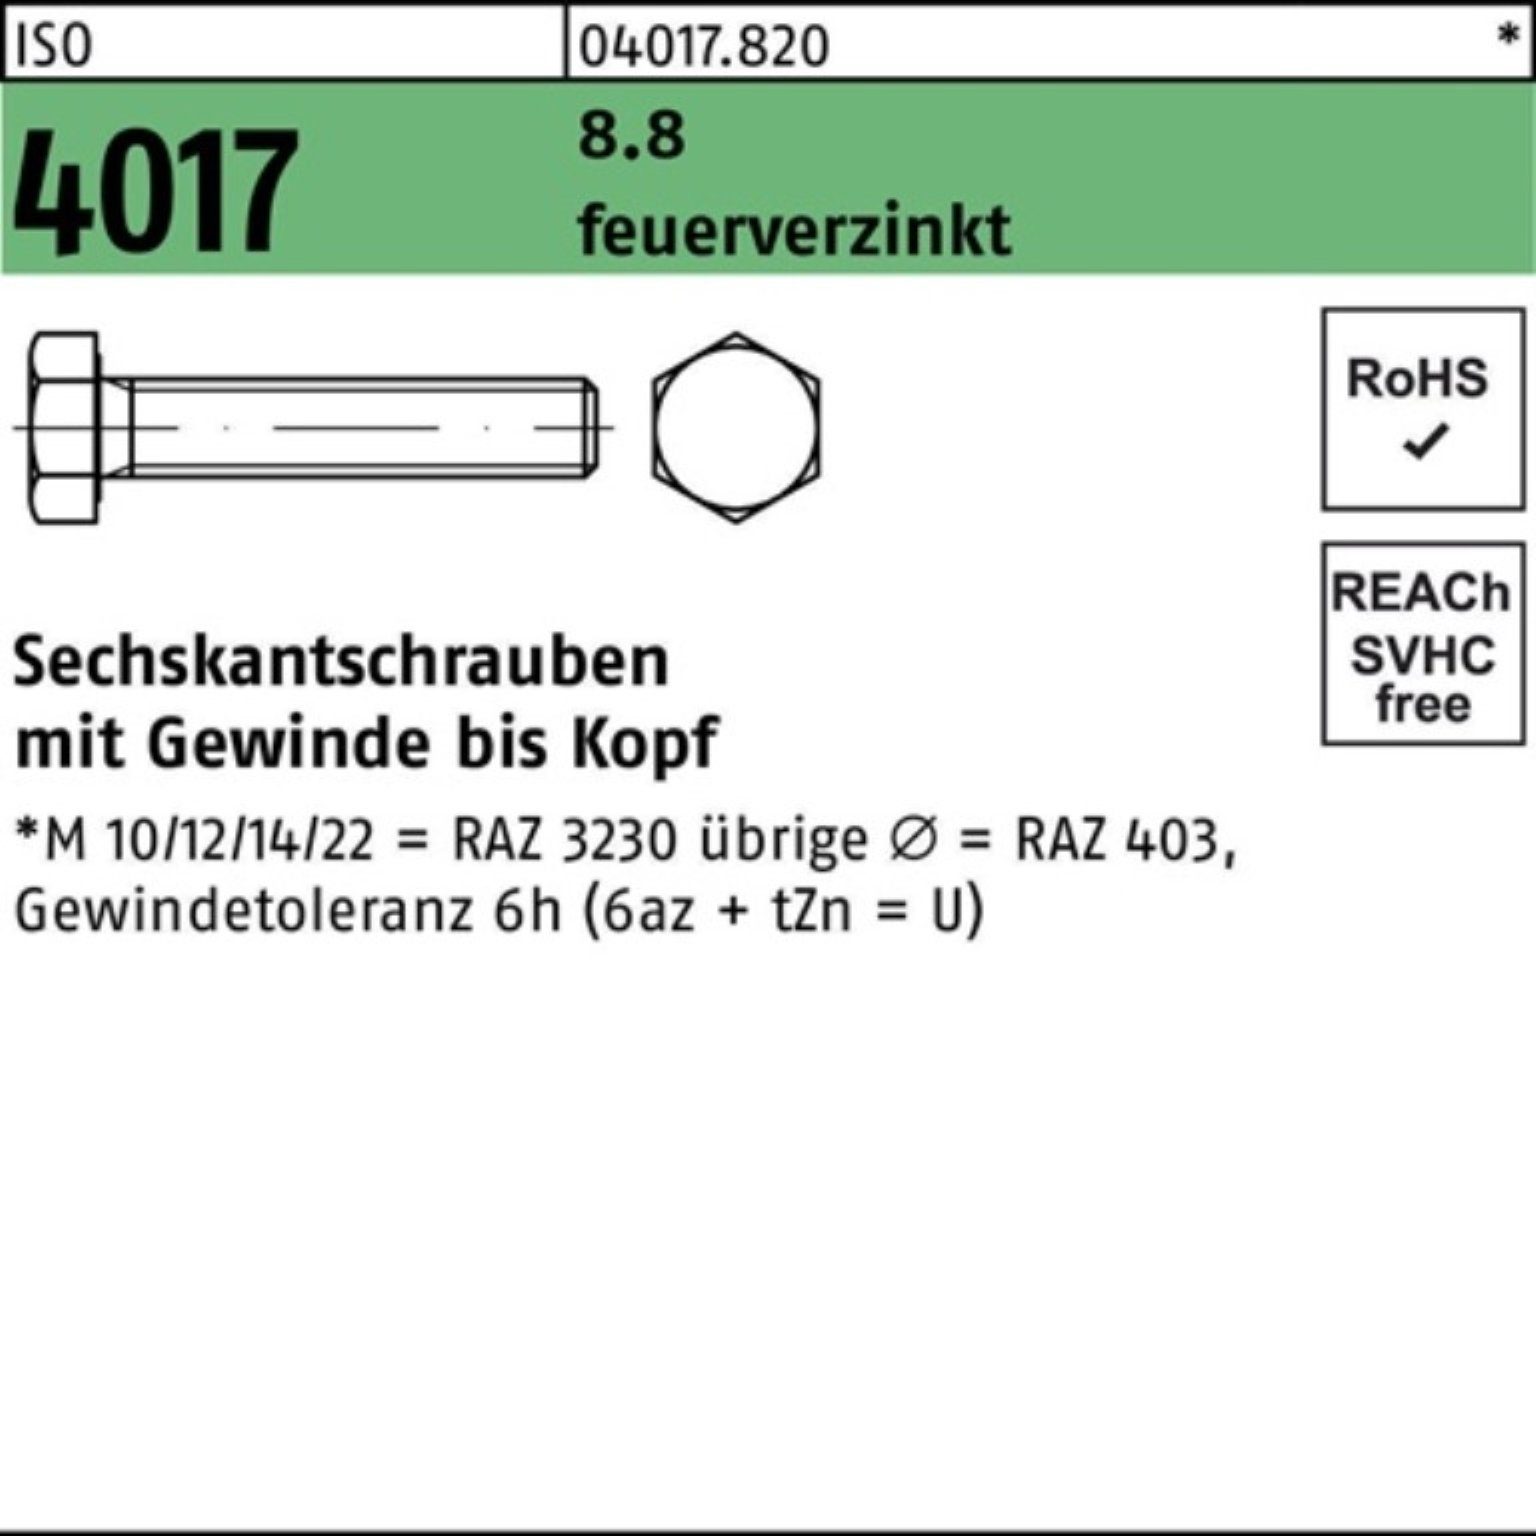 Bufab Sechskantschraube 500er Pack Sechskantschraube M6x 8.8 VG 500 4017 St 16 feuerverz. ISO